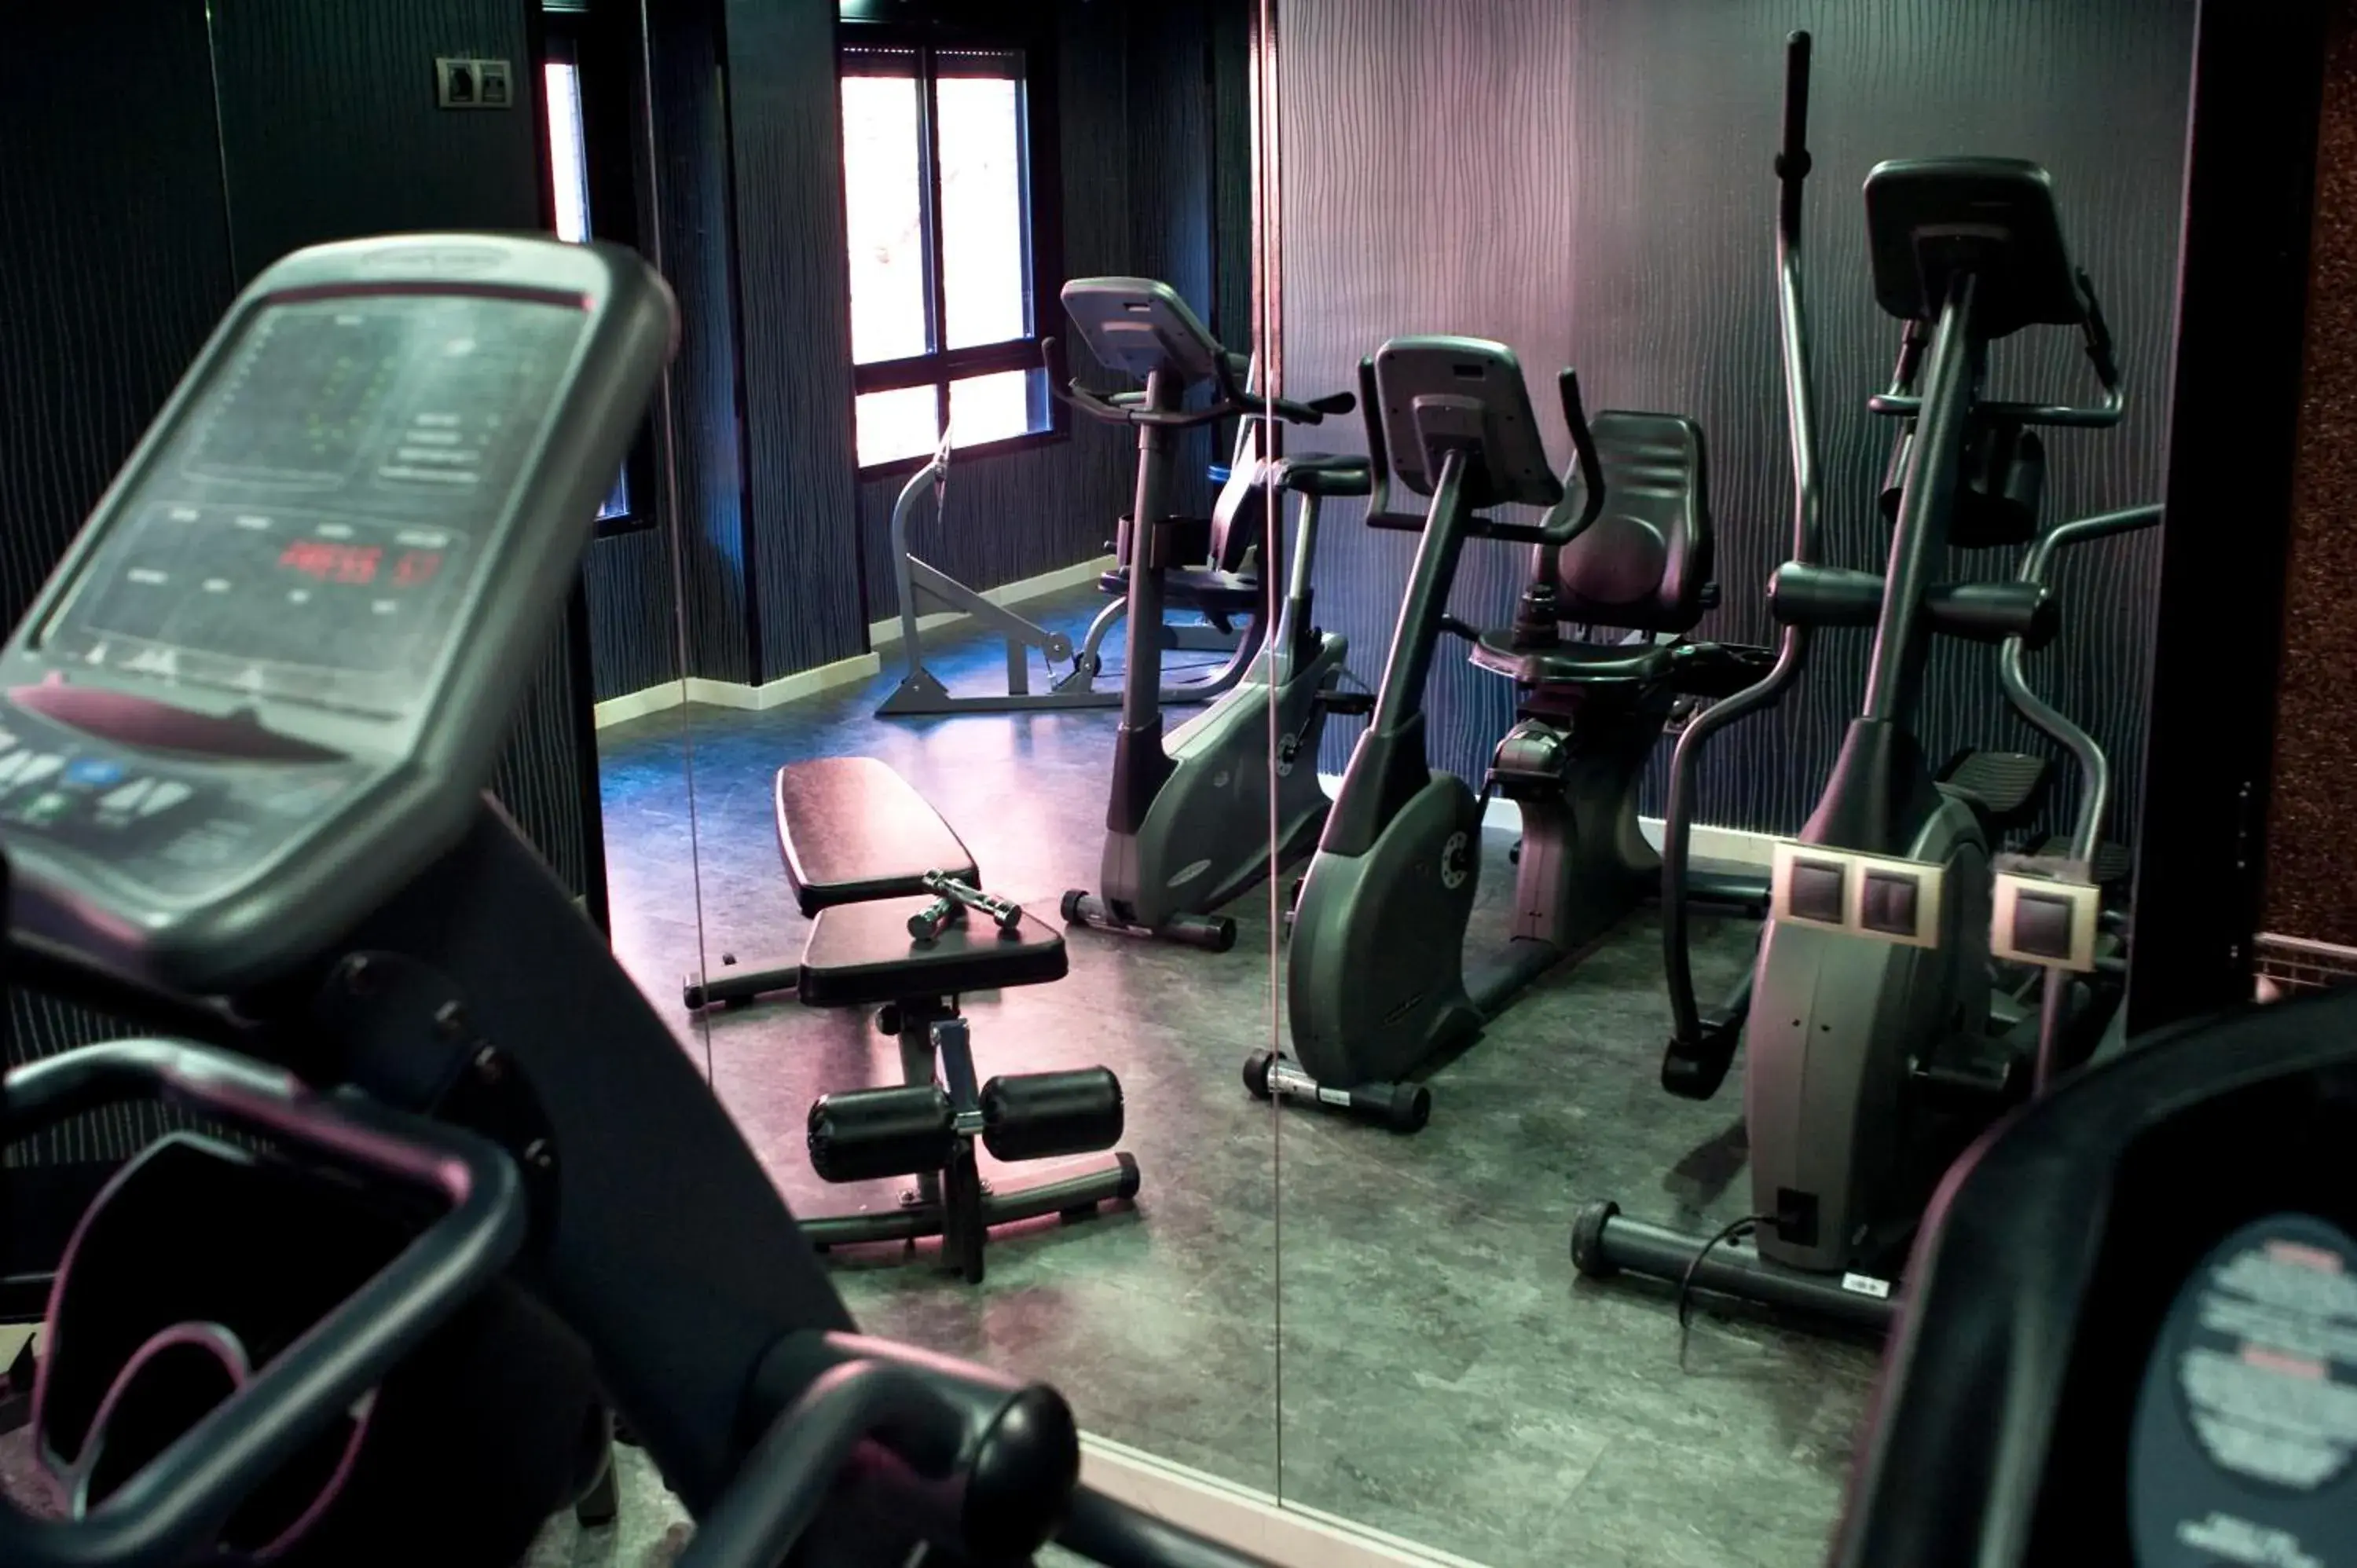 Fitness centre/facilities, Fitness Center/Facilities in Hotel Mirador de Chamartín